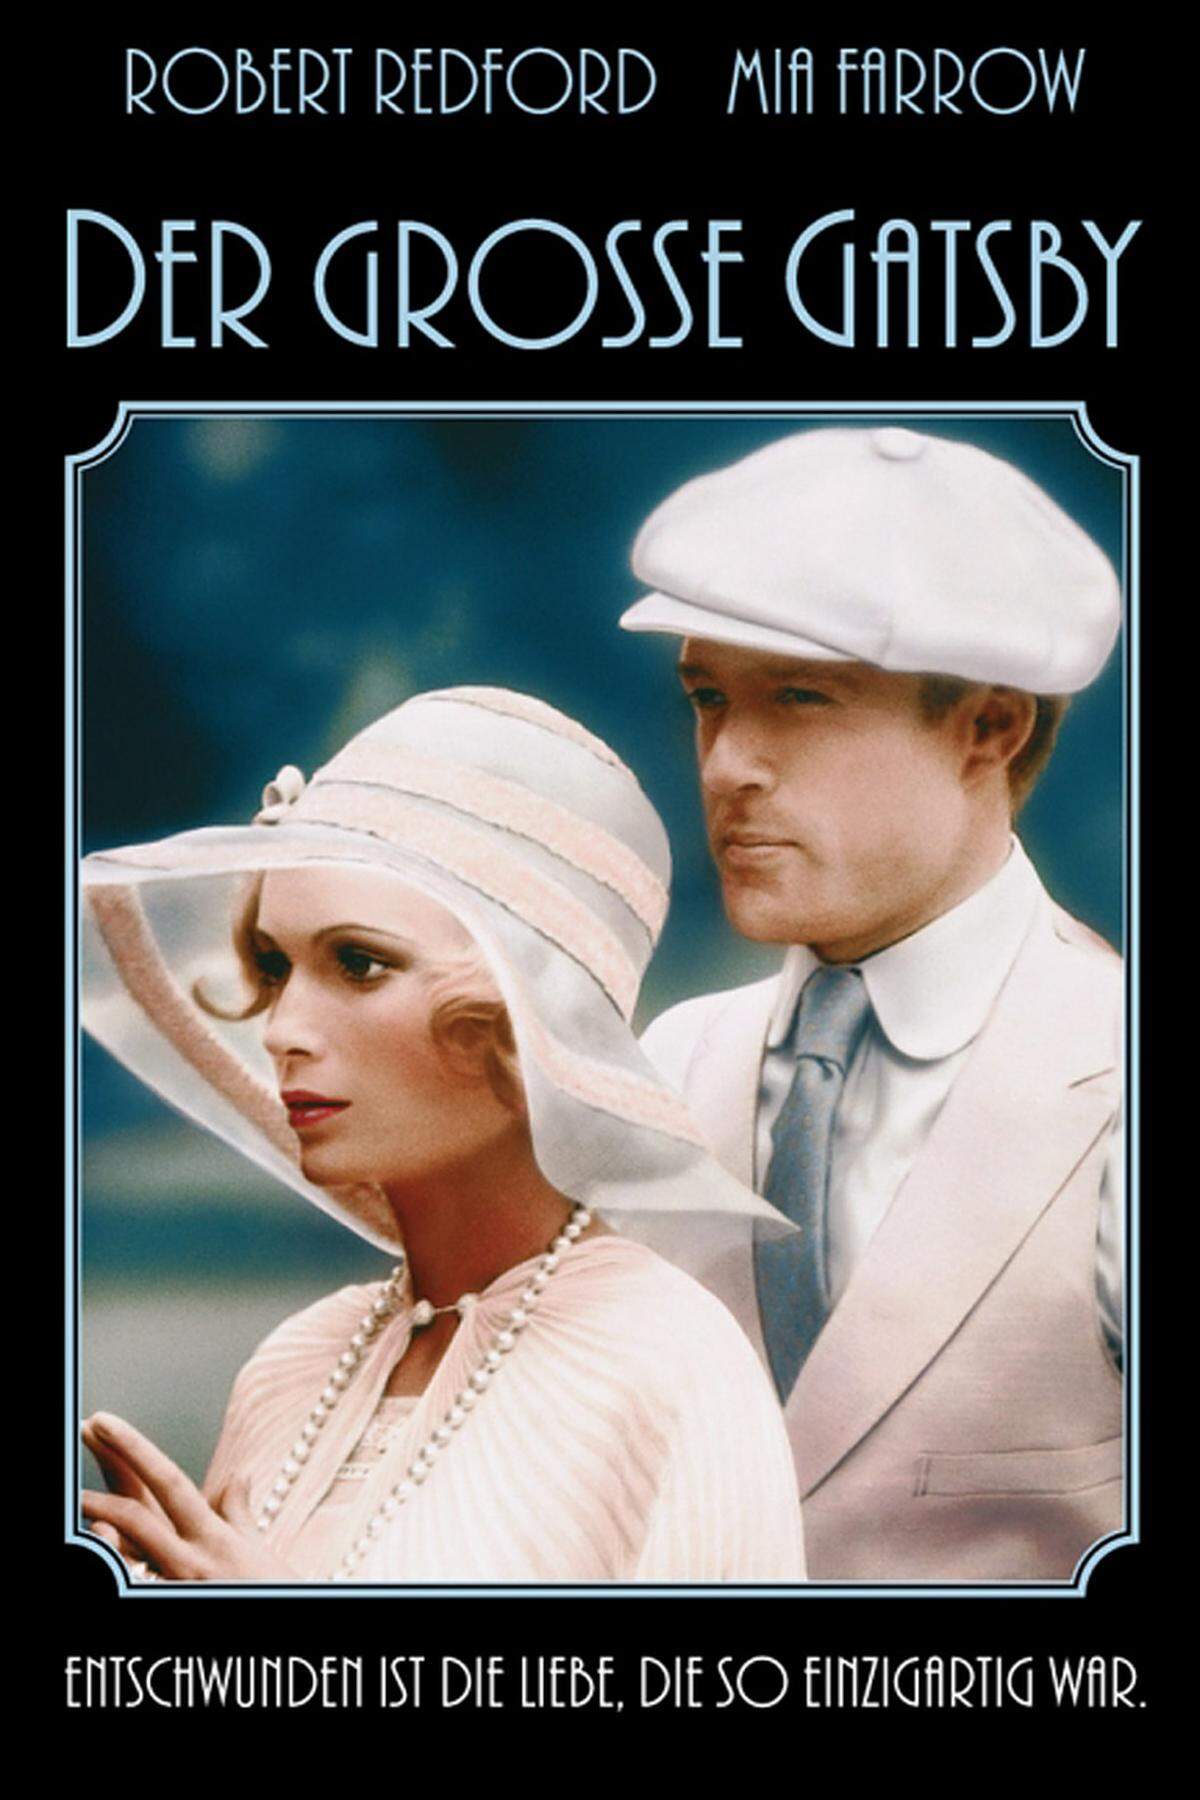 1974 verfilmte Regisseur Jack Clayton den Roman. Robert Redford faszinierte darin als zwielichtig-enigmatischer Gatsby. Als Fehlbesetzung gilt heute Mia Farrow als Daisy. Sie spielte Gatsbys große Liebe als narzisstisches Partygirl.